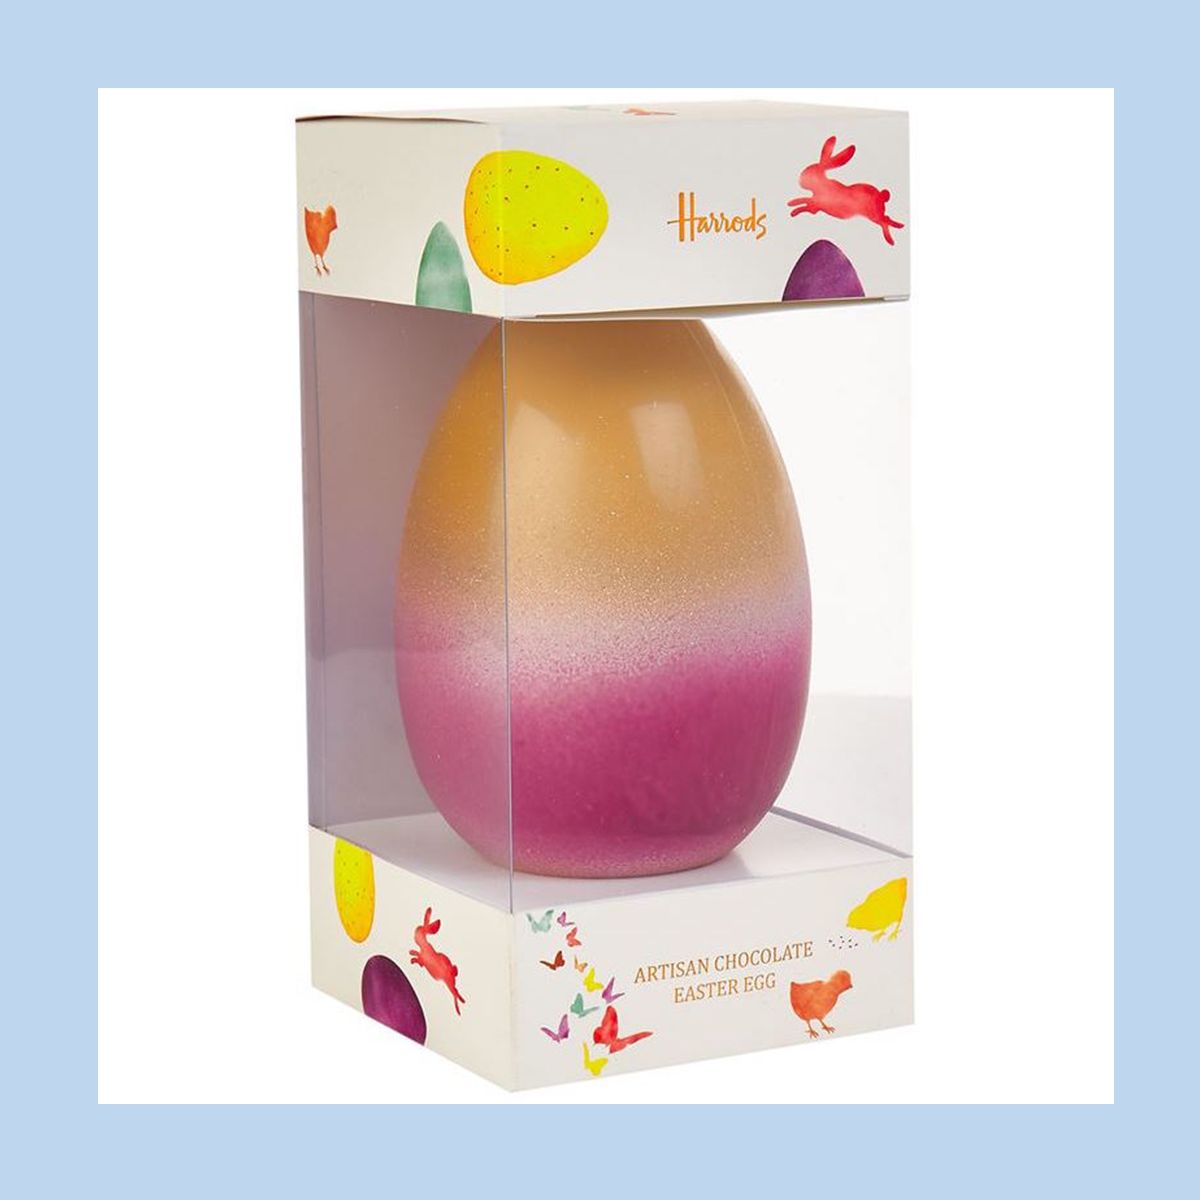 Harrods Artisan Easter Egg